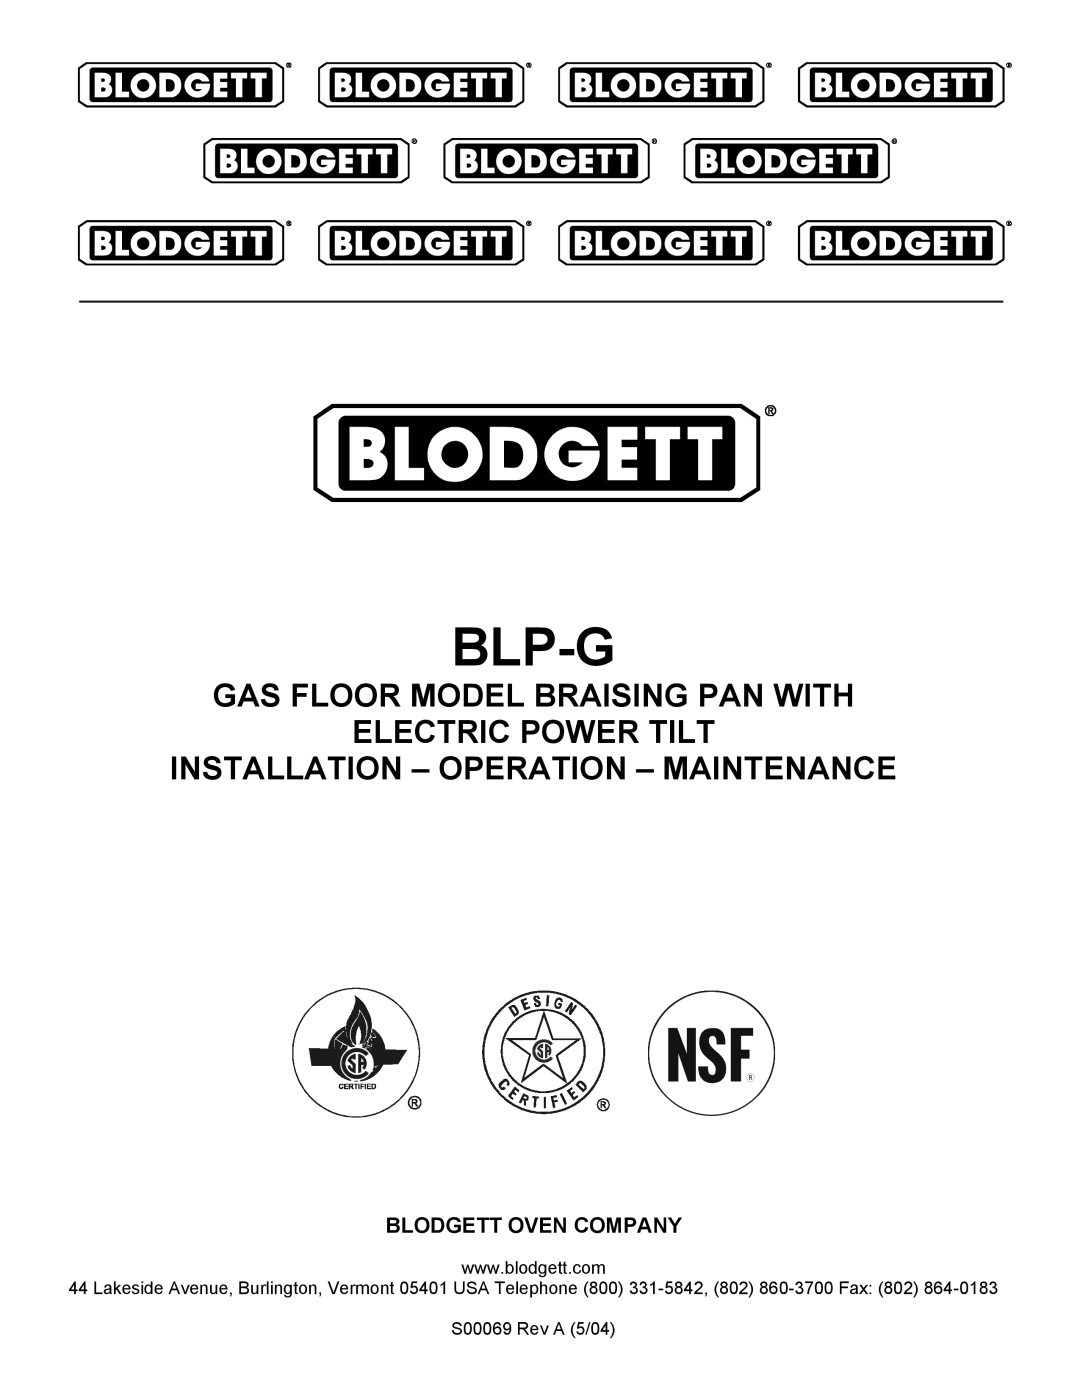 Blodgett BLP-40G manual Blp-G, Gas Floor Model Braising Pan With Electric Power Tilt, S00069 Rev A 5/04 